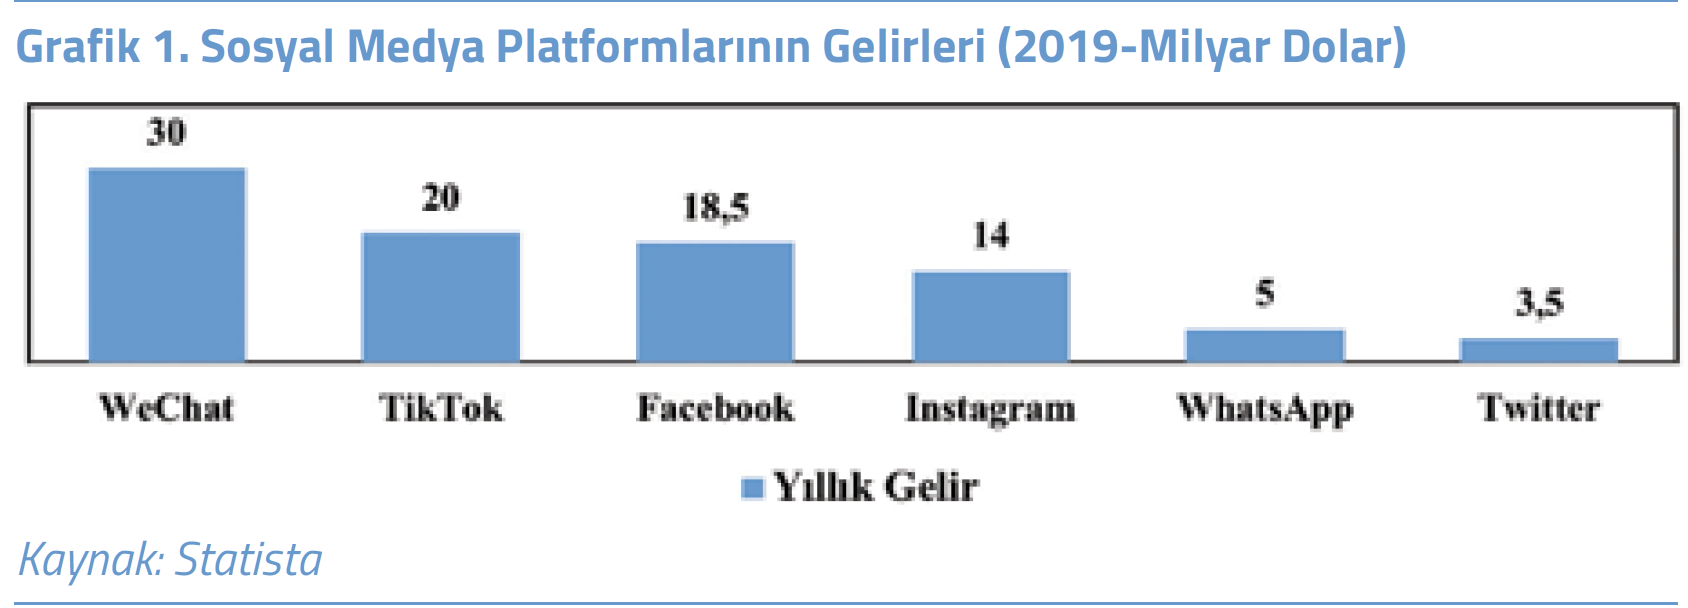 Grafik 1. Sosyal Medya Platformlarının Gelirleri (2019-Milyar Dolar)